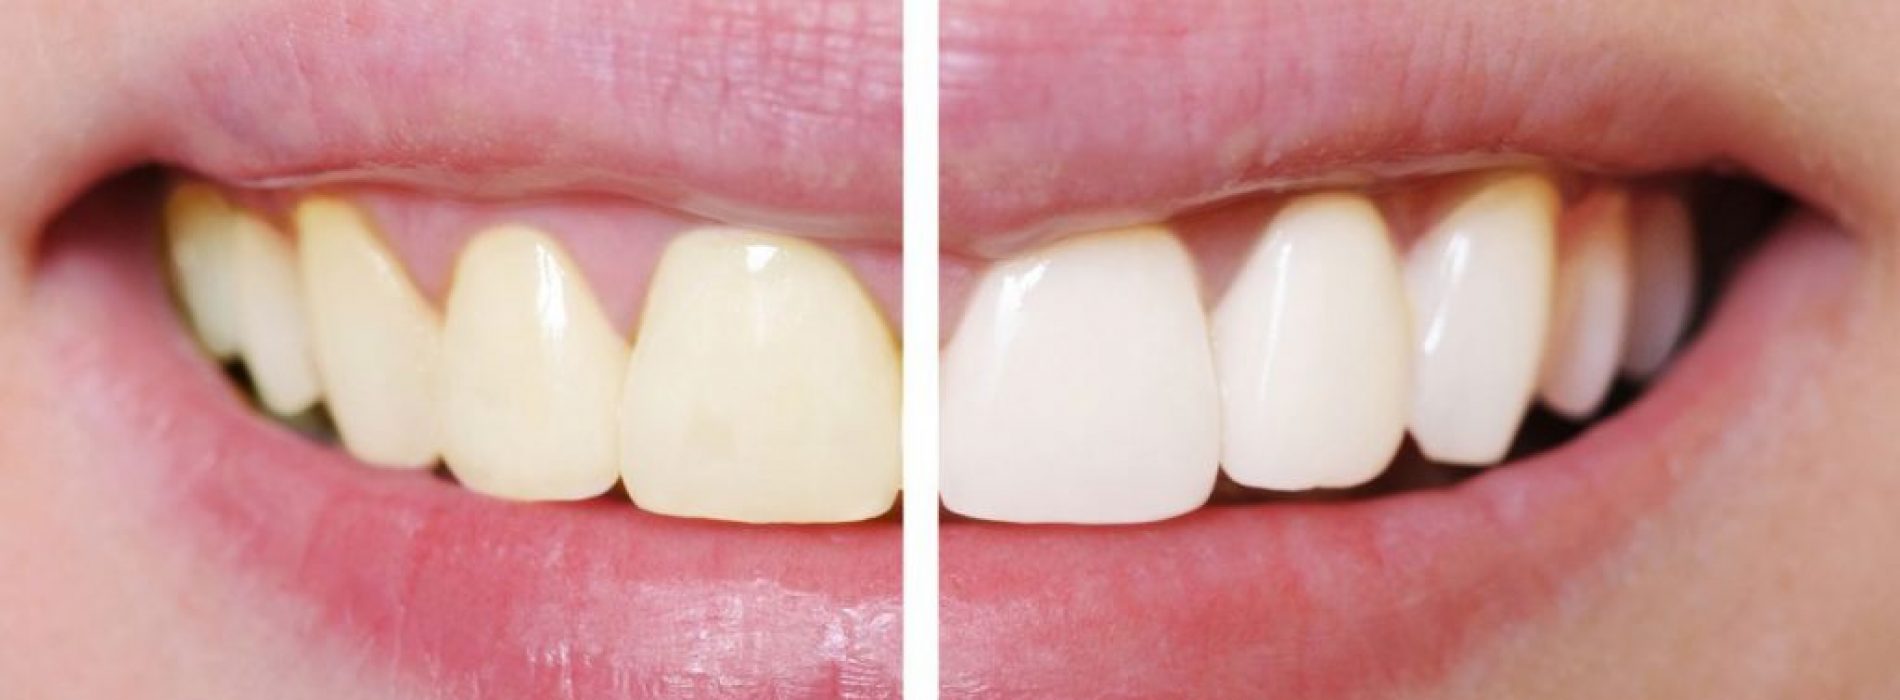 Zo krijg je hagelwitte tanden zonder je tanden te bleken! Dit is zo simpel!